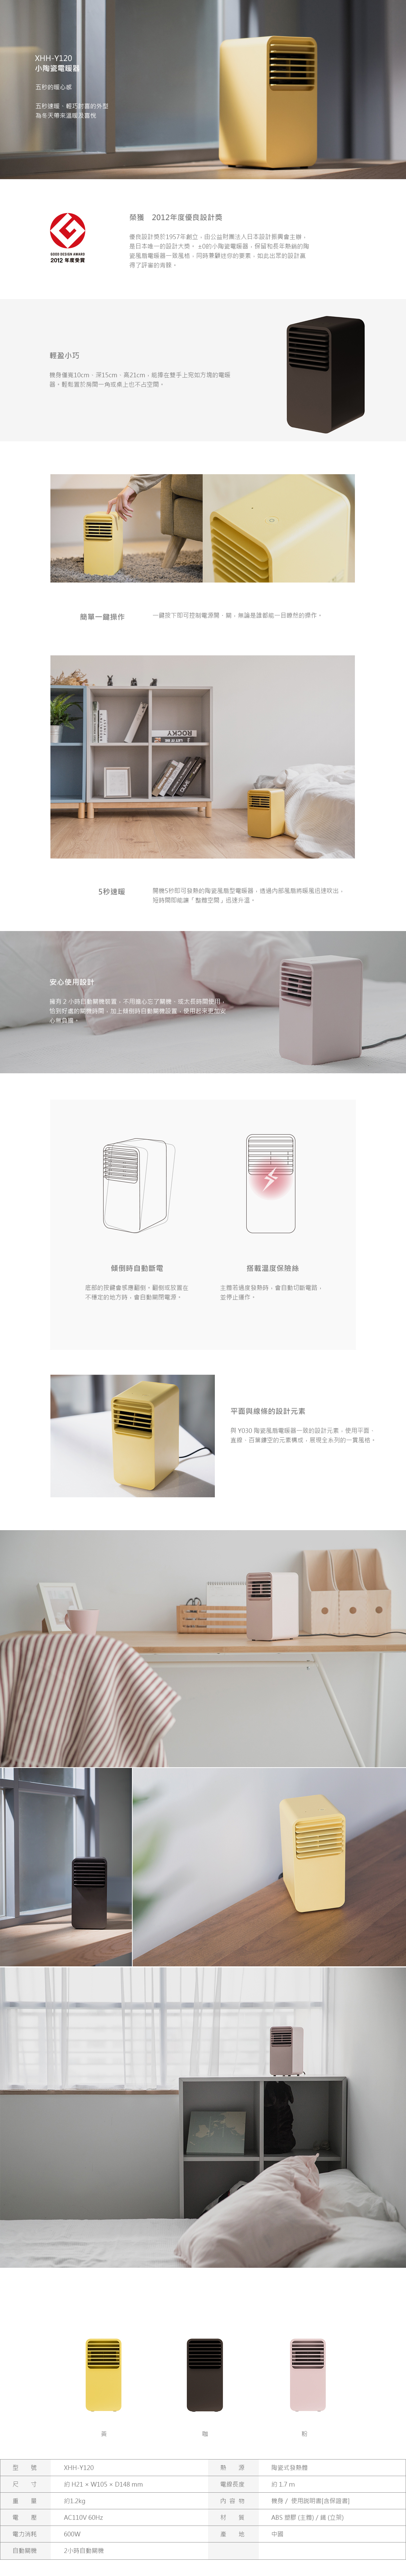 【免費禮品包裝】XHH-Y120電暖器